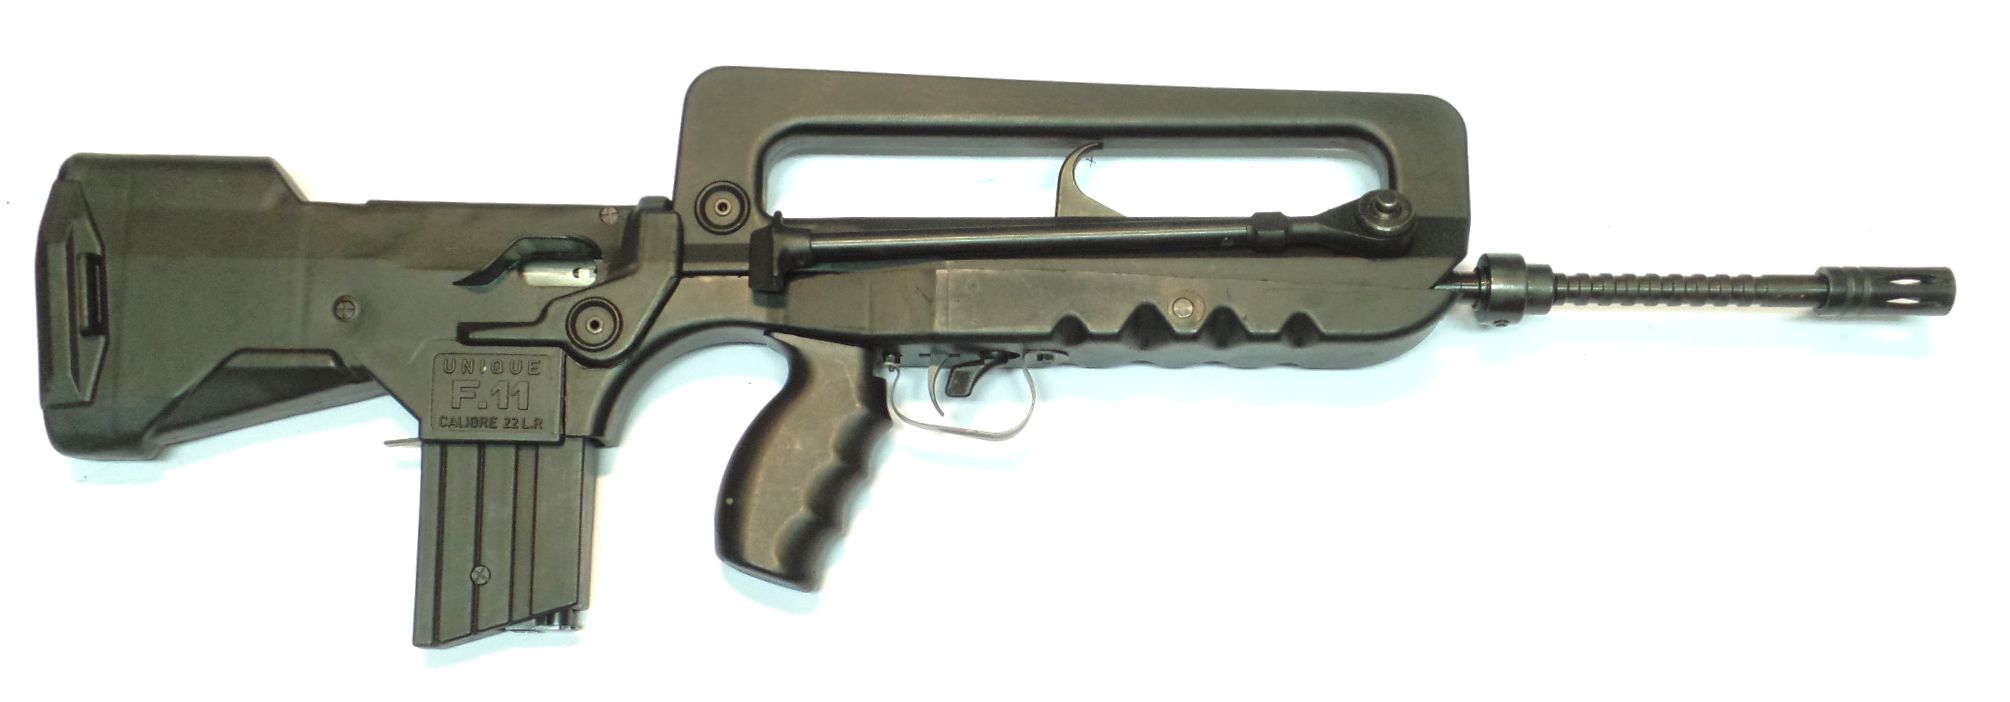 Unique F11 (Famas) calibre 22LR